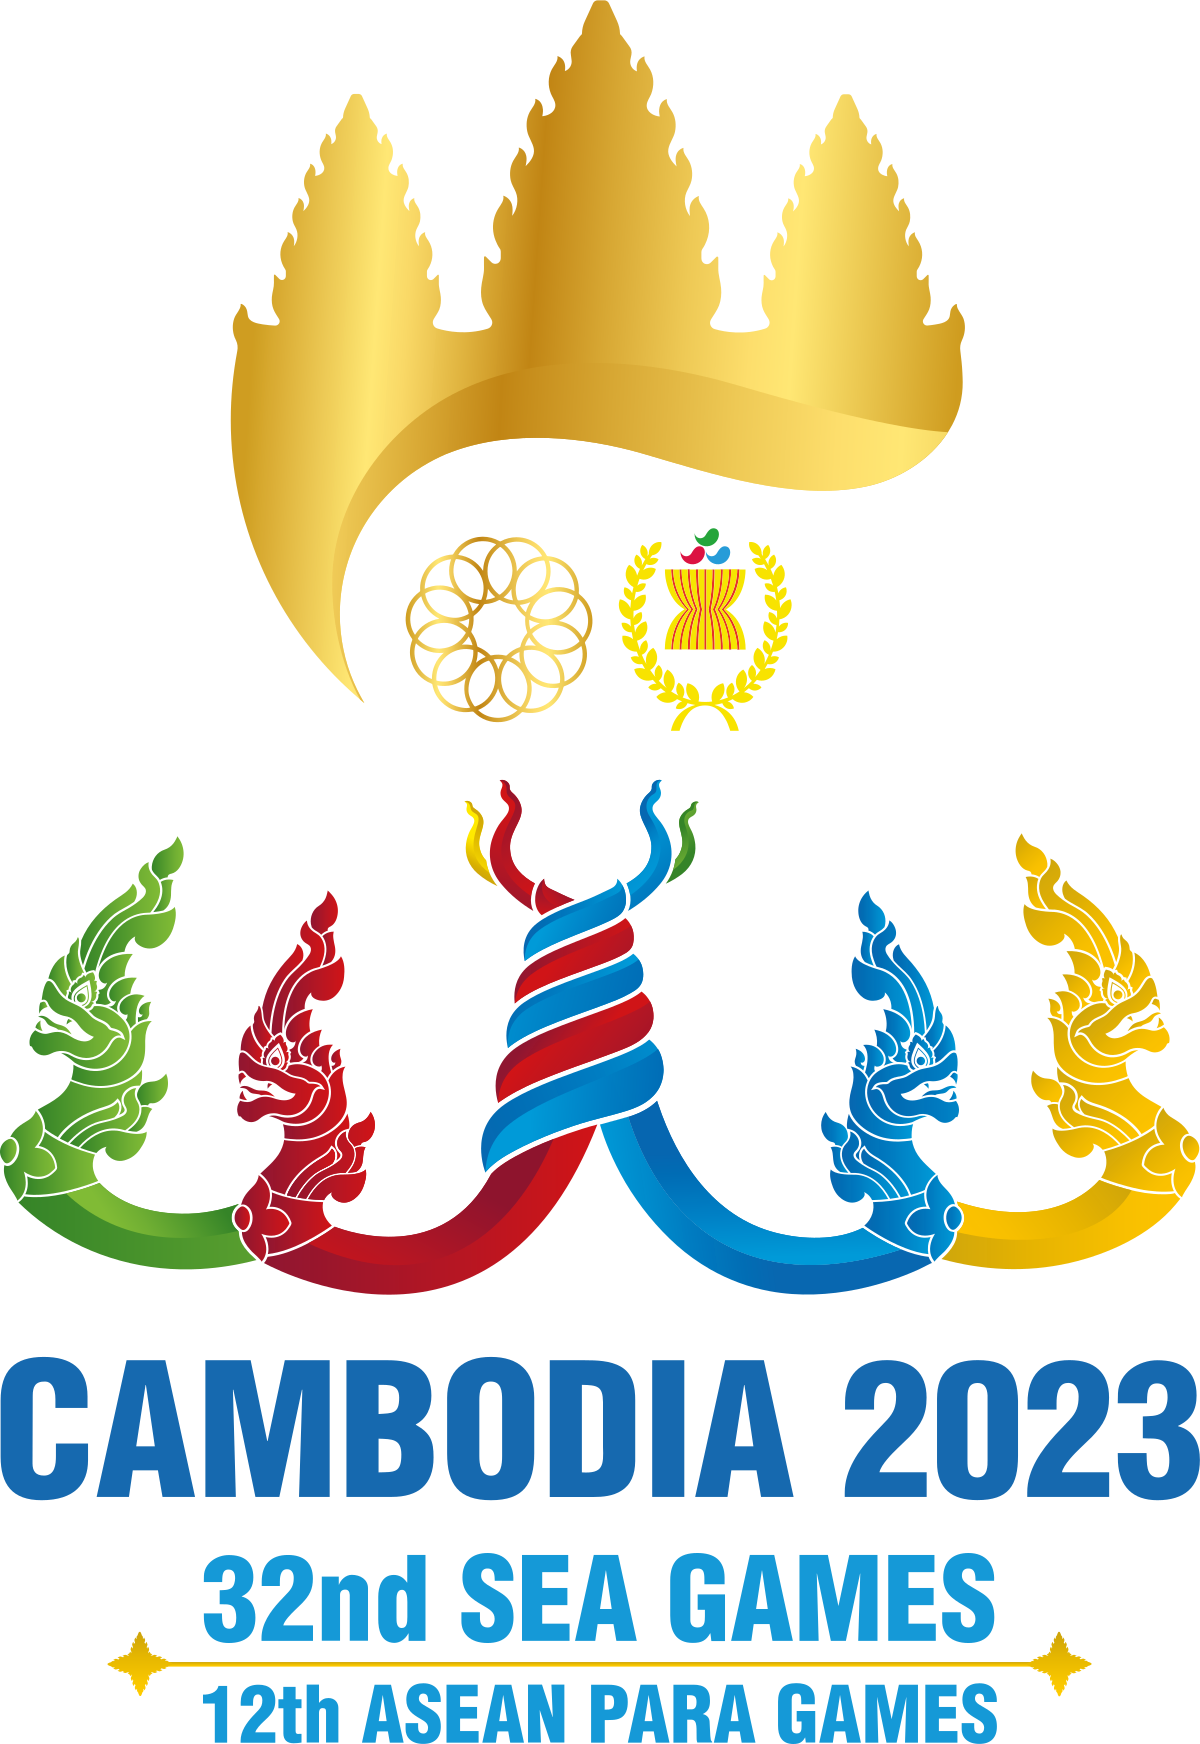 Đại Hội Thể Thao Đông Nam Á 2023 – Wikipedia Tiếng Việt